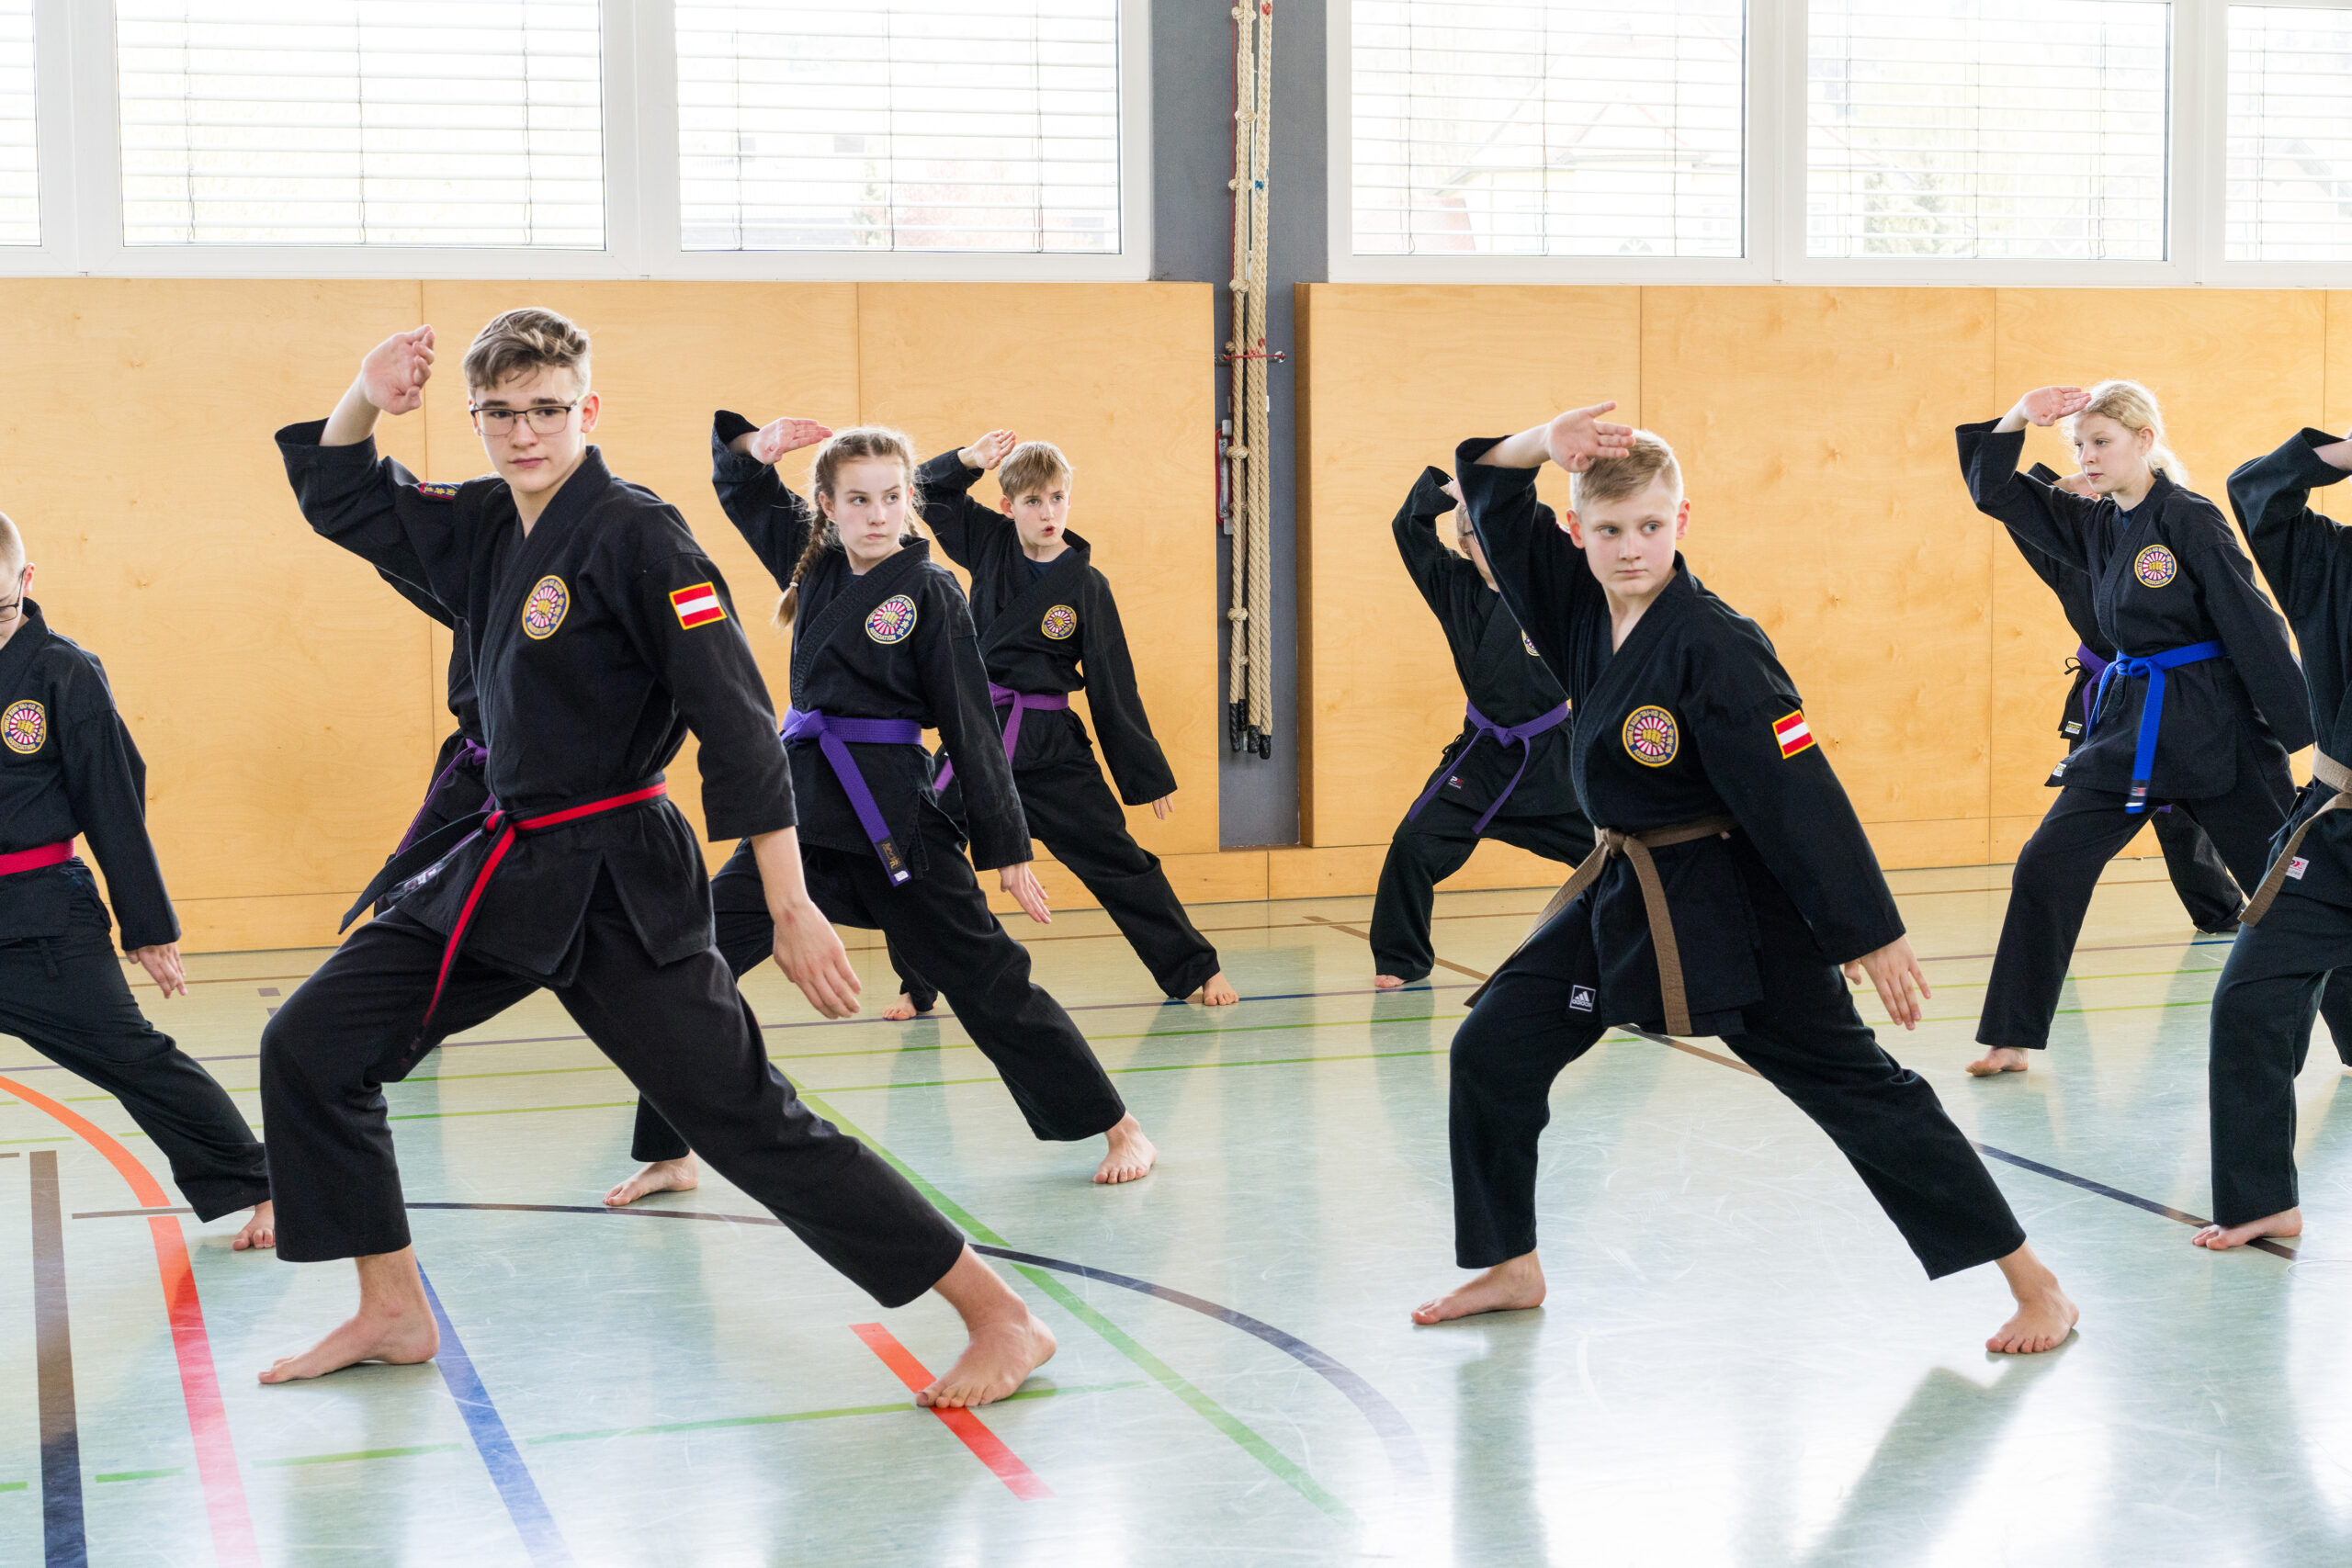 Eifrige Karateschüler perfektionieren Techniken gemeinsam in einer Turnhalle.